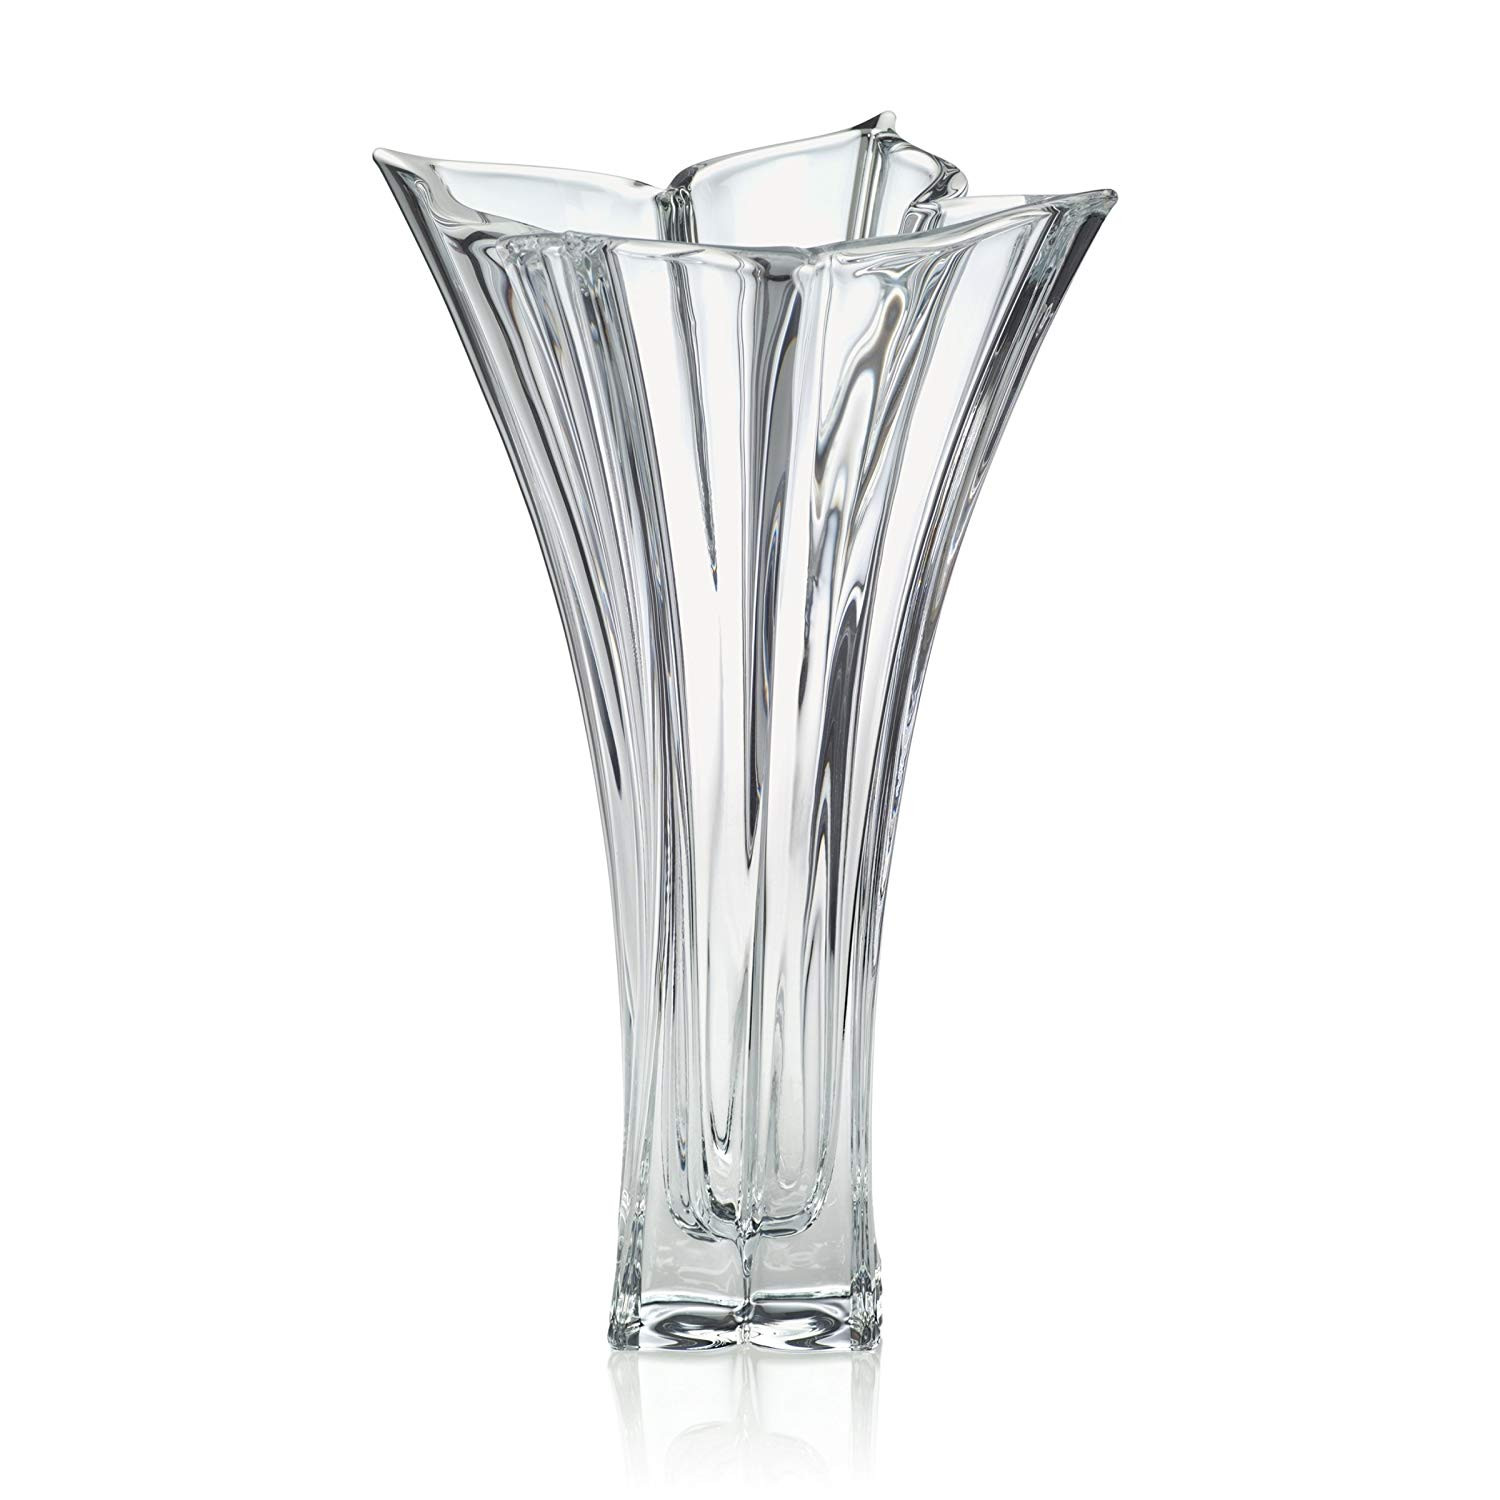 21 Ideal Mikasa Blossom Crystal Vase 2023 free download mikasa blossom crystal vase of amazon com mikasa crystal florale crystal vase 14 inch home kitchen intended for 810frtzhvvl sl1500